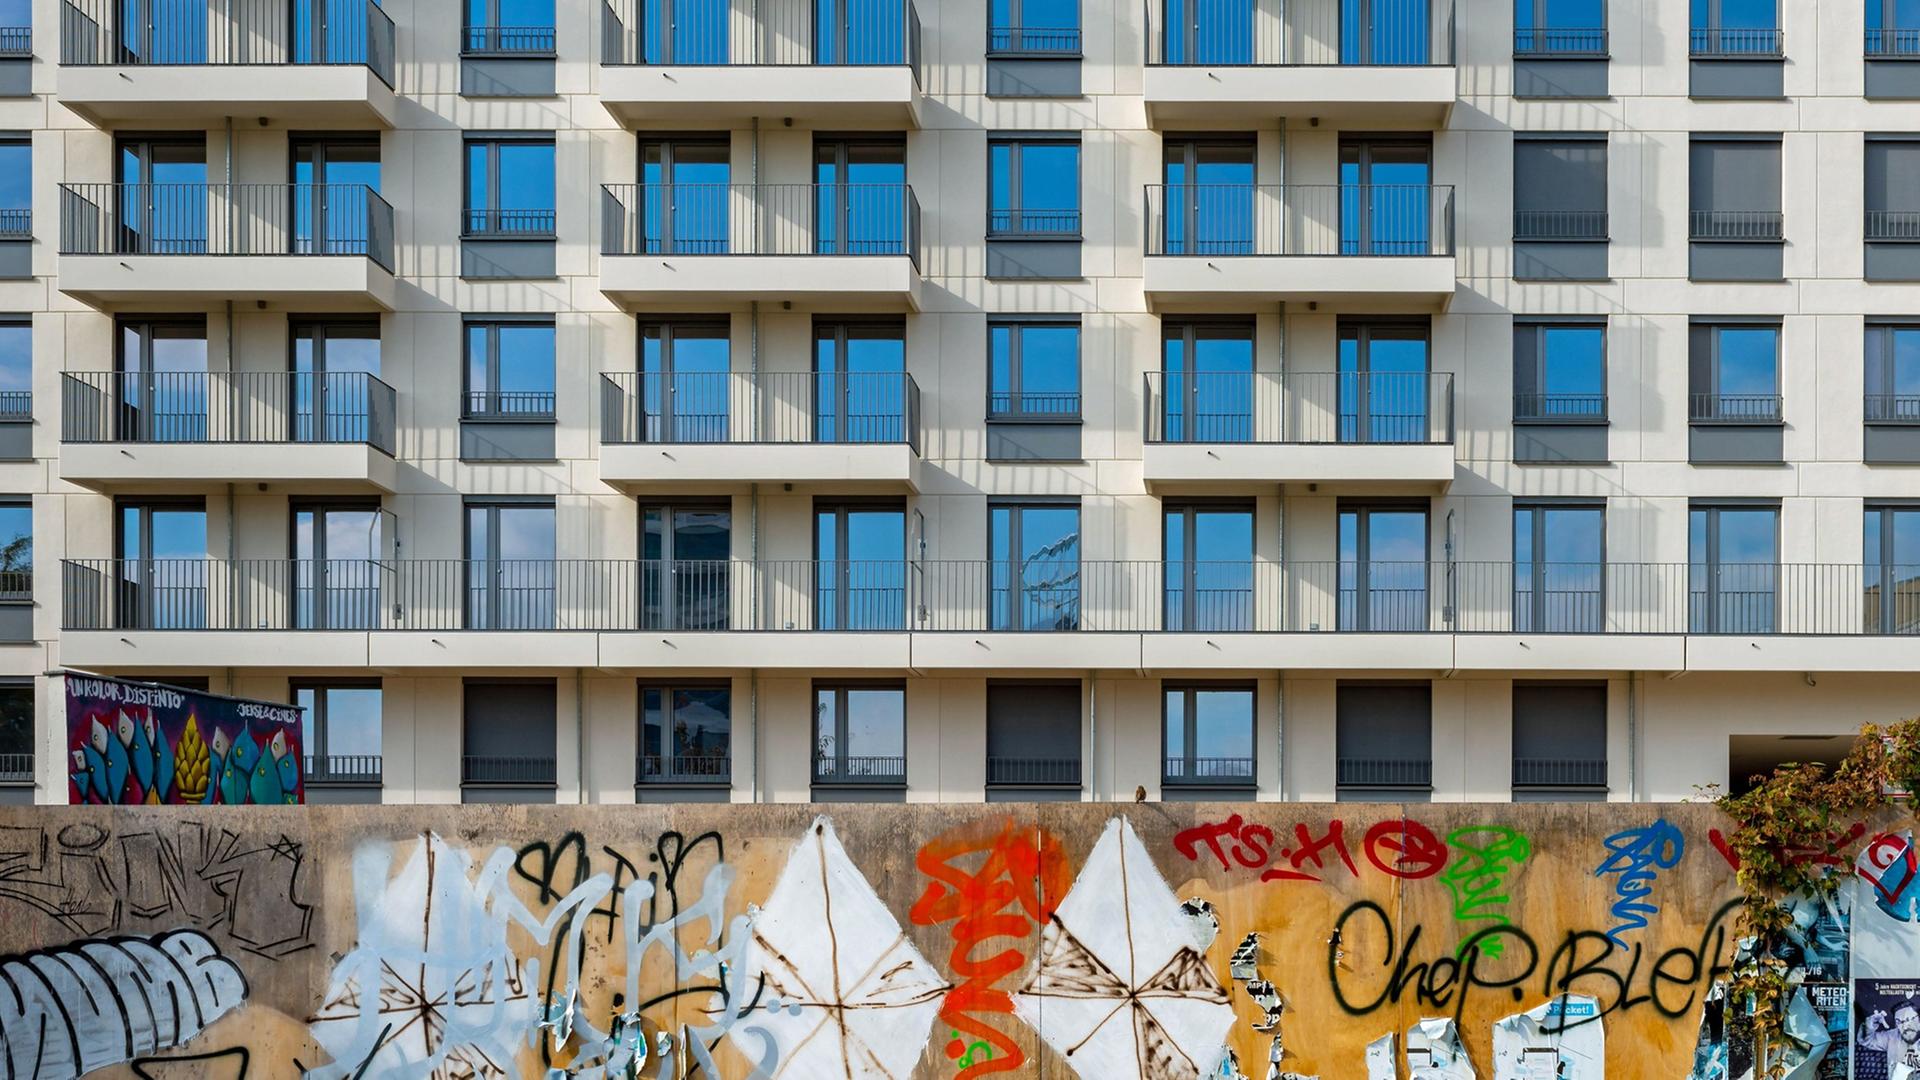 Blick auf die Fassade eines neuerbauten Wohnhauses an der East Side Gallery in Berlin